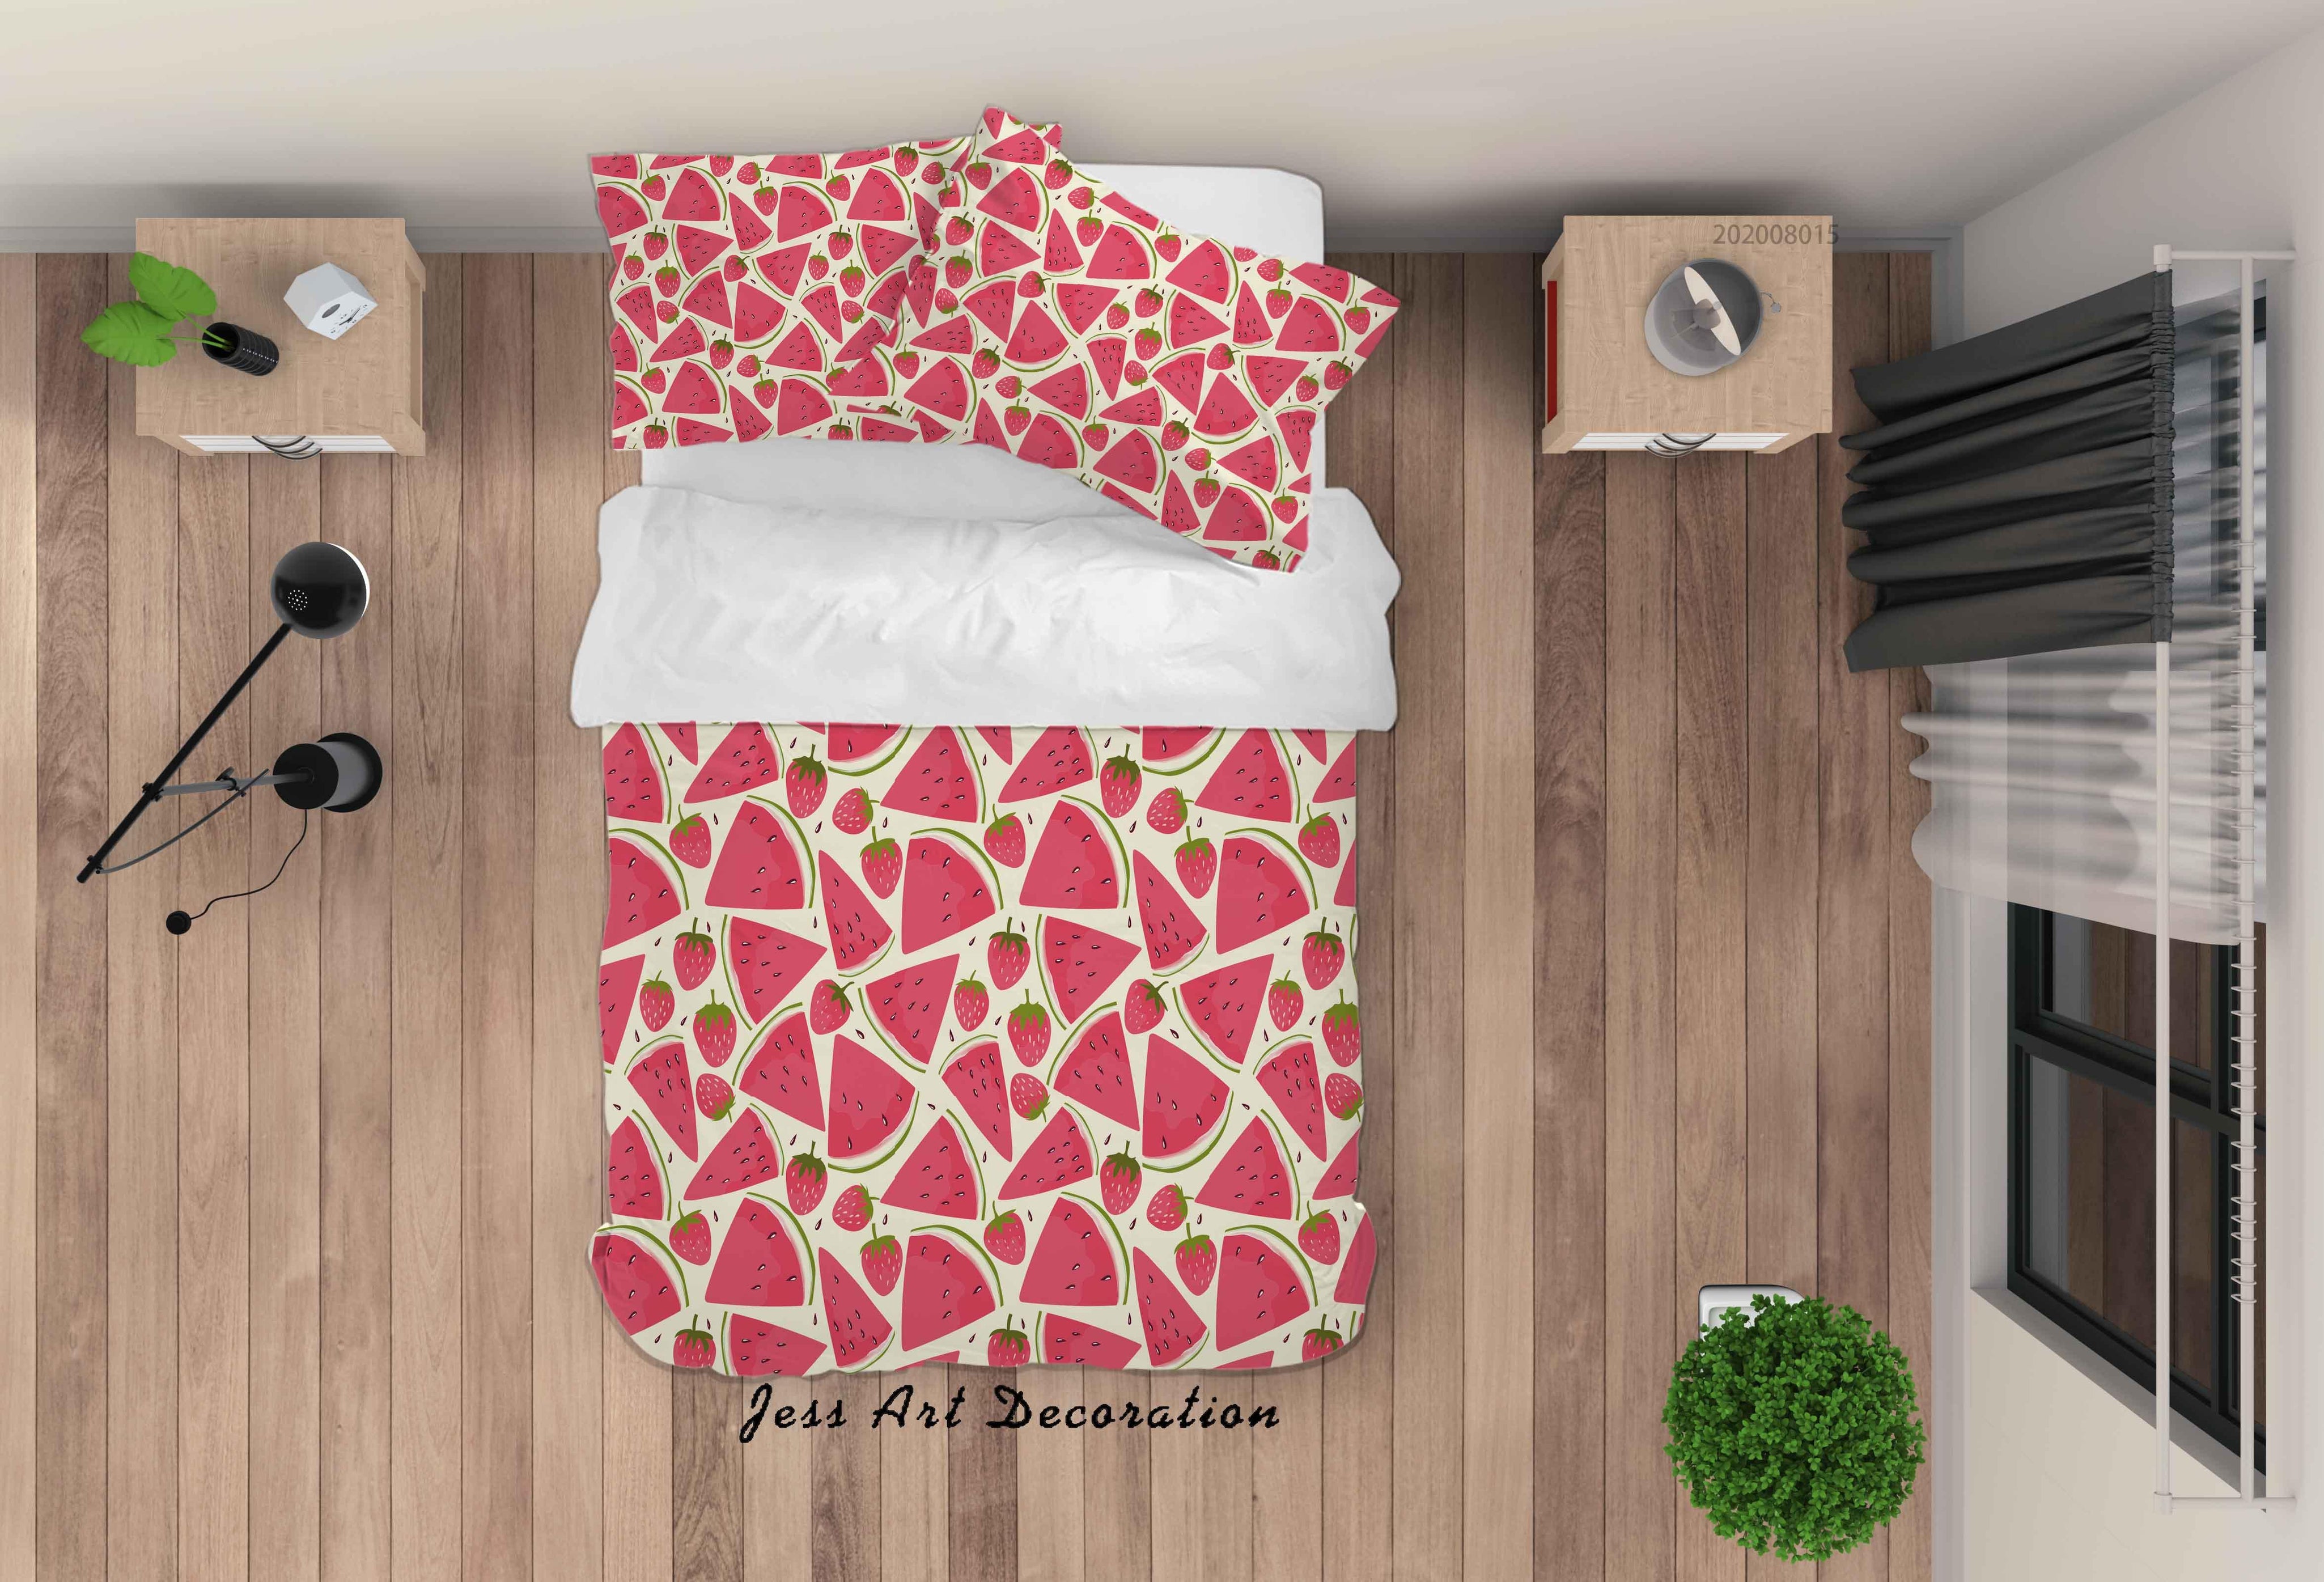 3D Watermelon Strawberry Fruity Quilt Cover Set Bedding Set Duvet Cover Pillowcases LXL- Jess Art Decoration